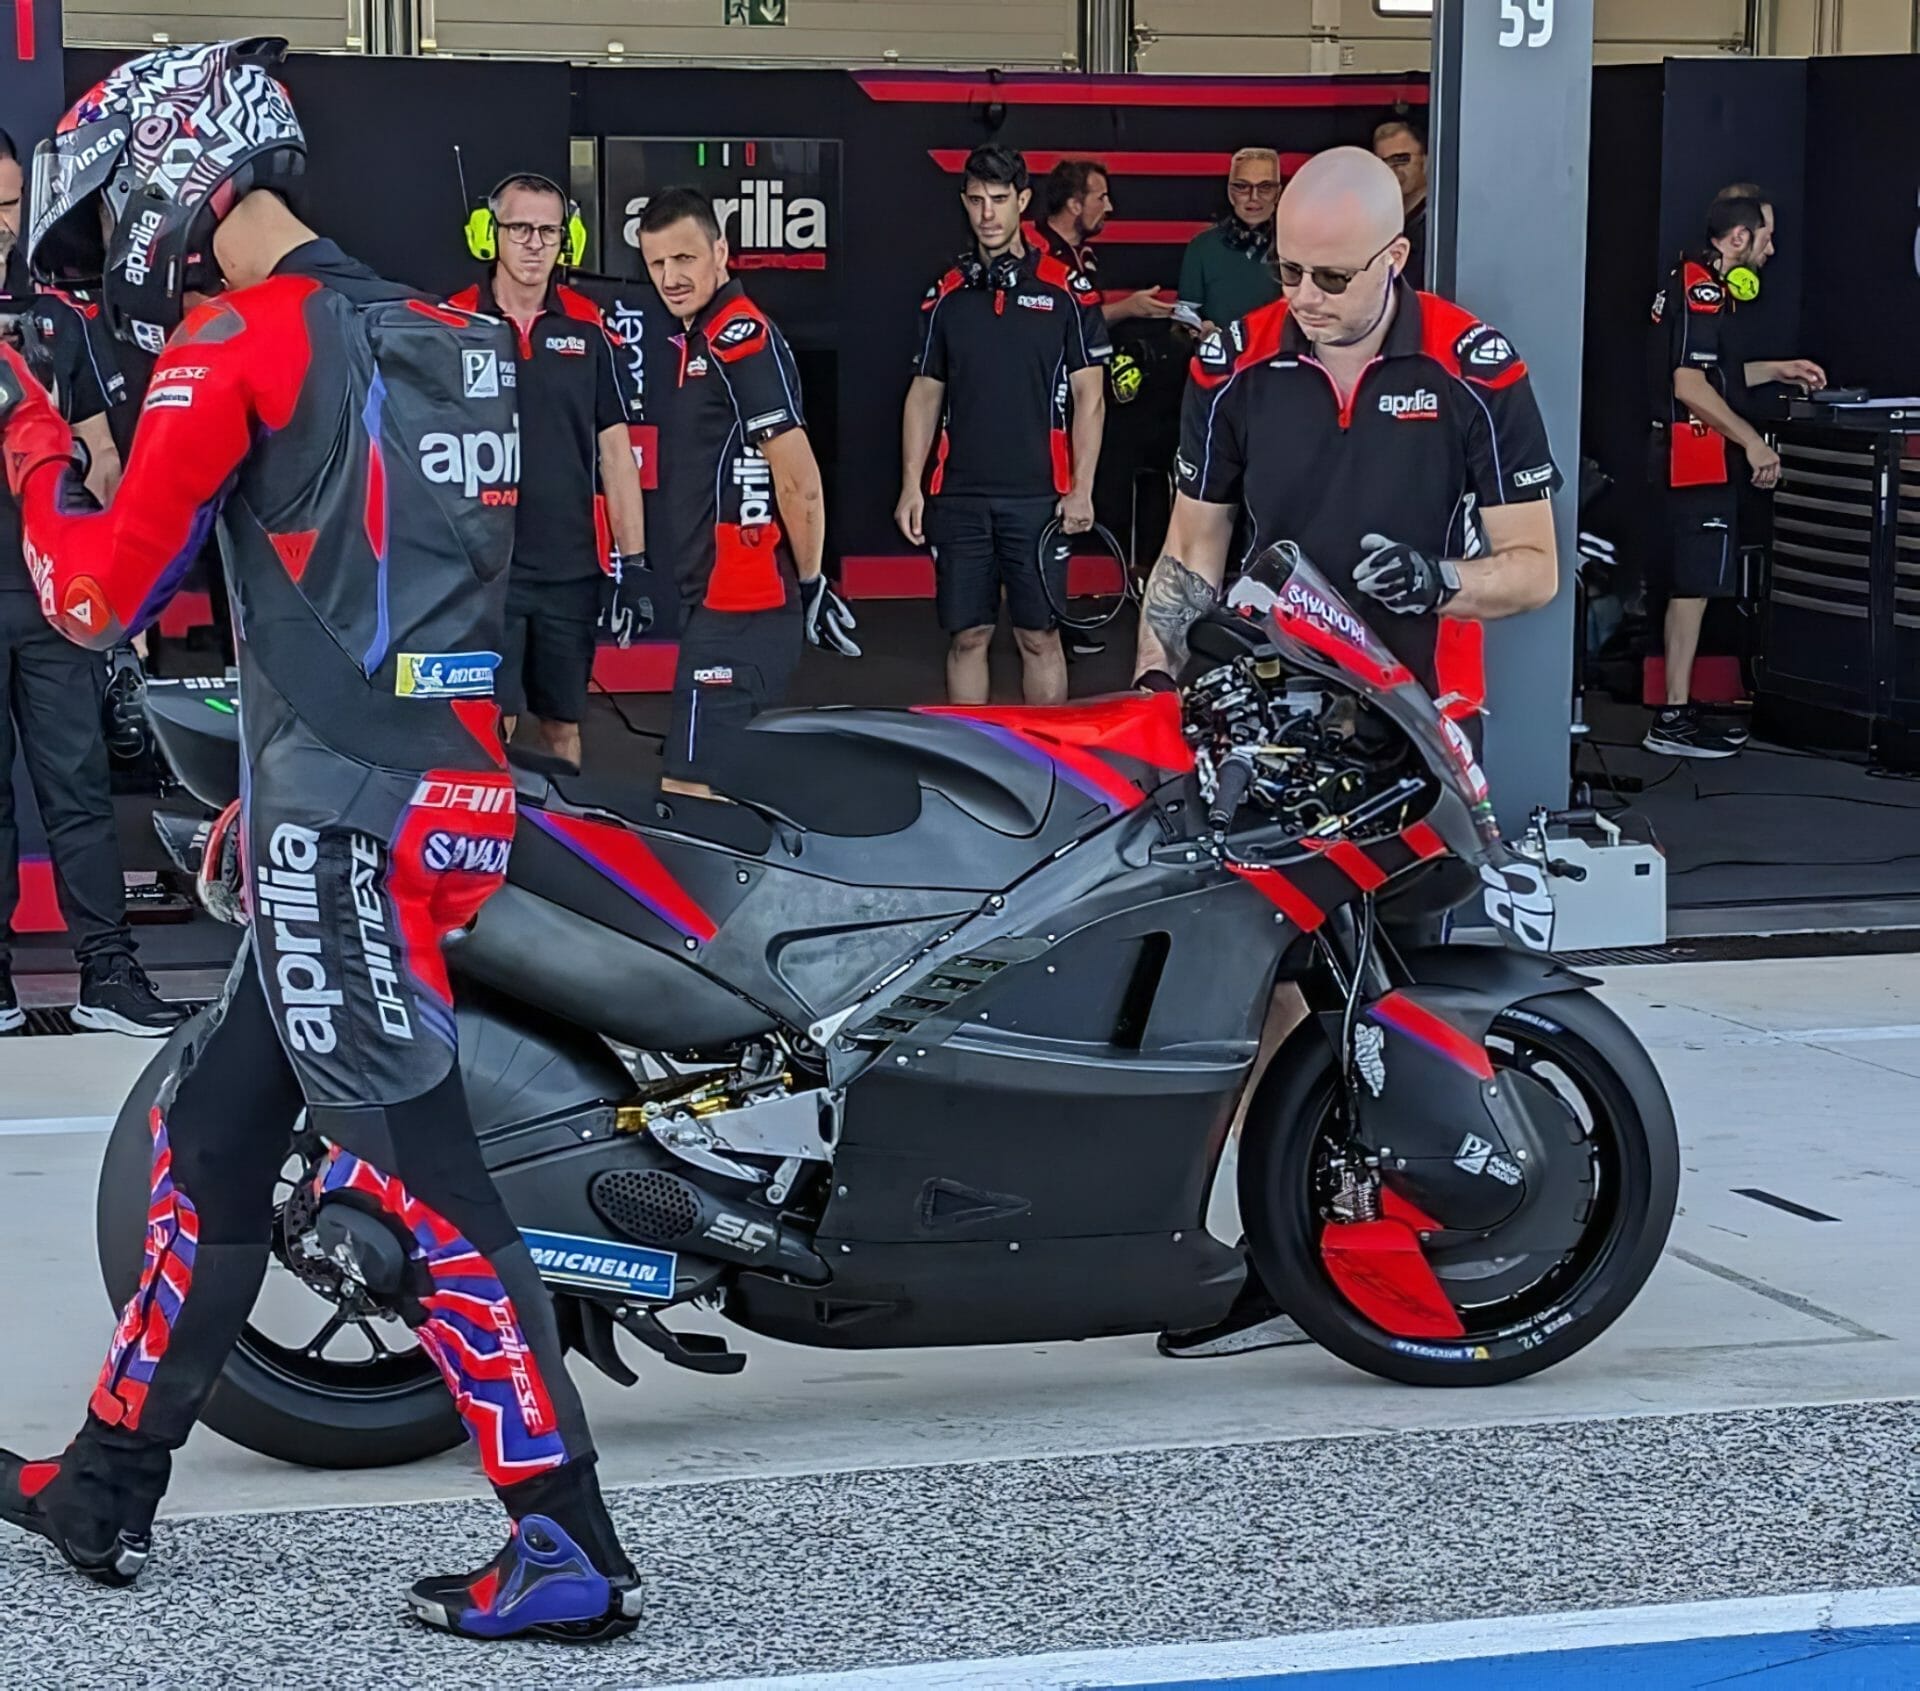 Aprilia experimentiert mit Carbonrahmen für ihre MotoGP Maschine